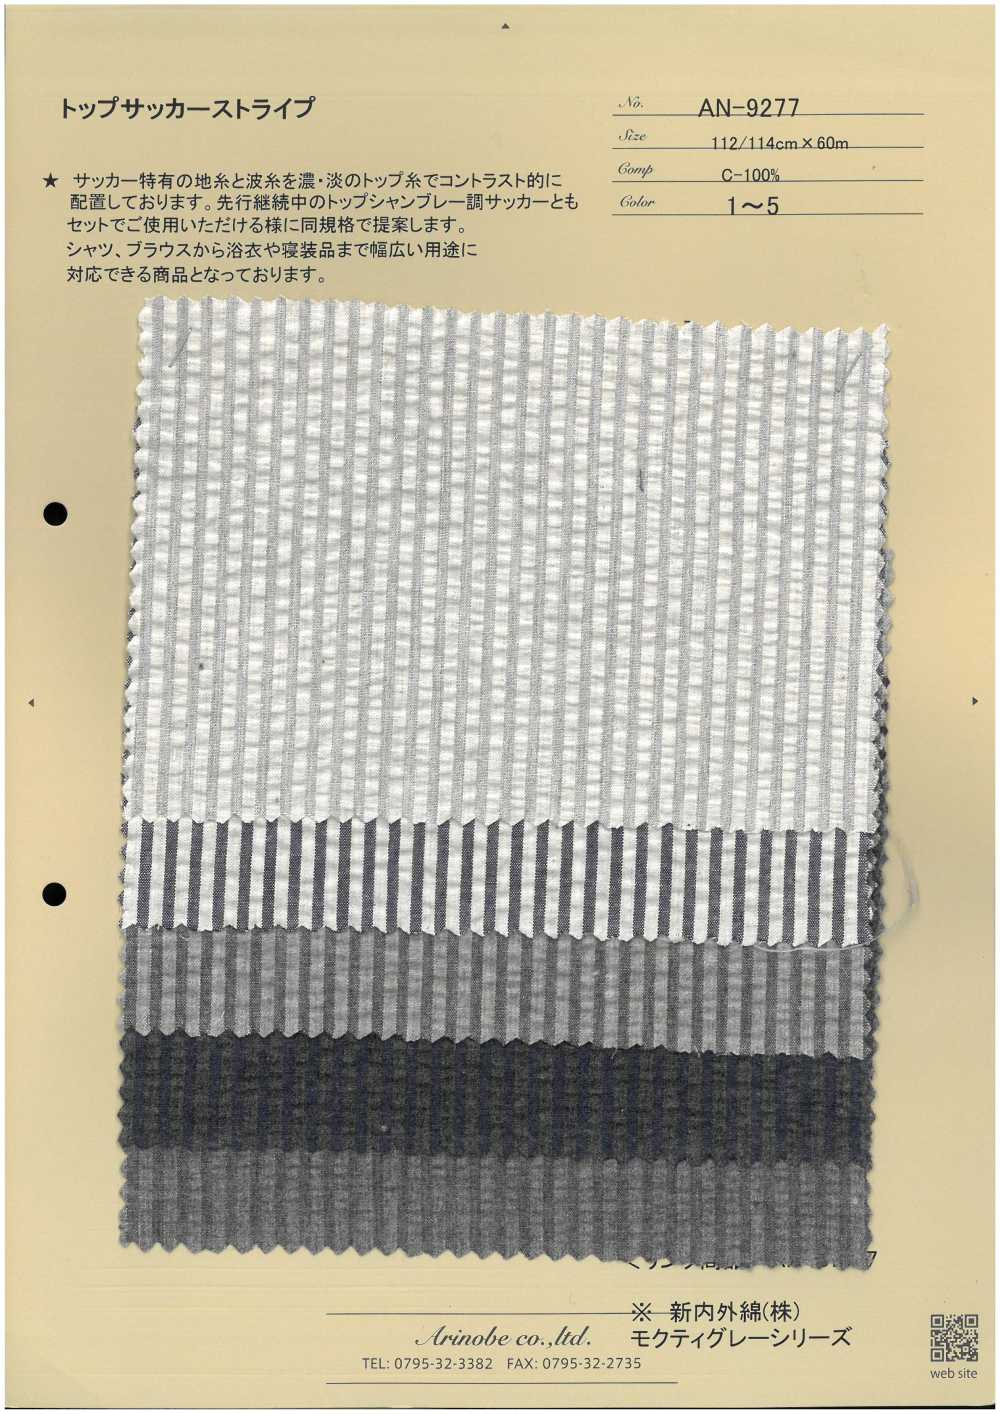 AN-9277 Top Seersucker Rayas[Fabrica Textil] ARINOBE CO., LTD.